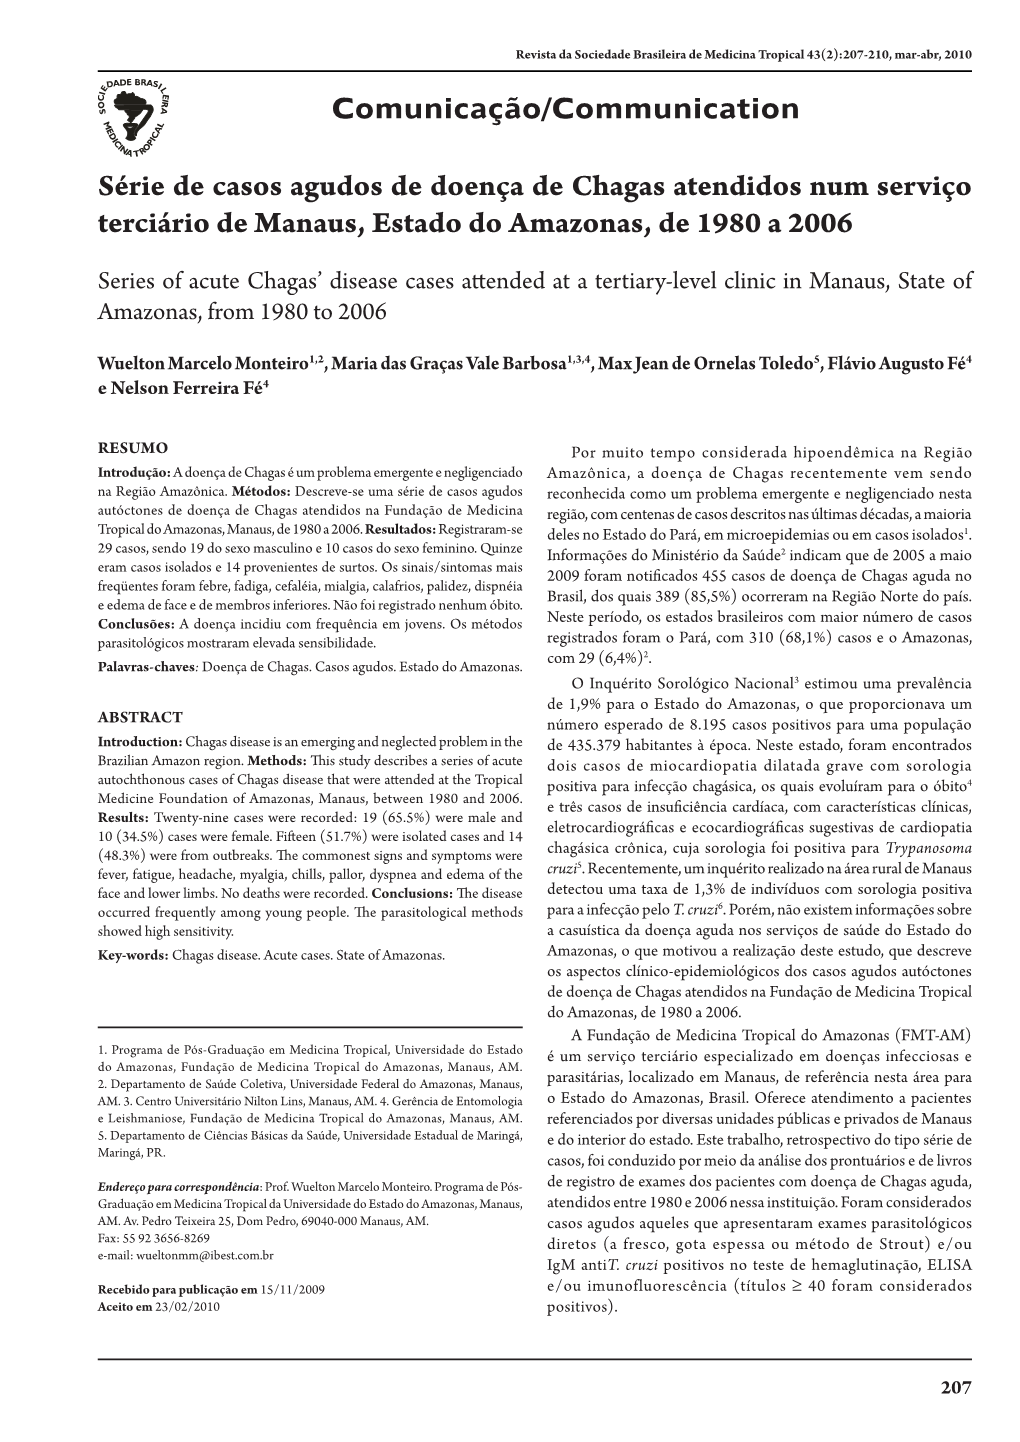 Série De Casos Agudos De Doença De Chagas Atendidos Num Serviço Terciário De Manaus, Estado Do Amazonas, De 1980 a 2006